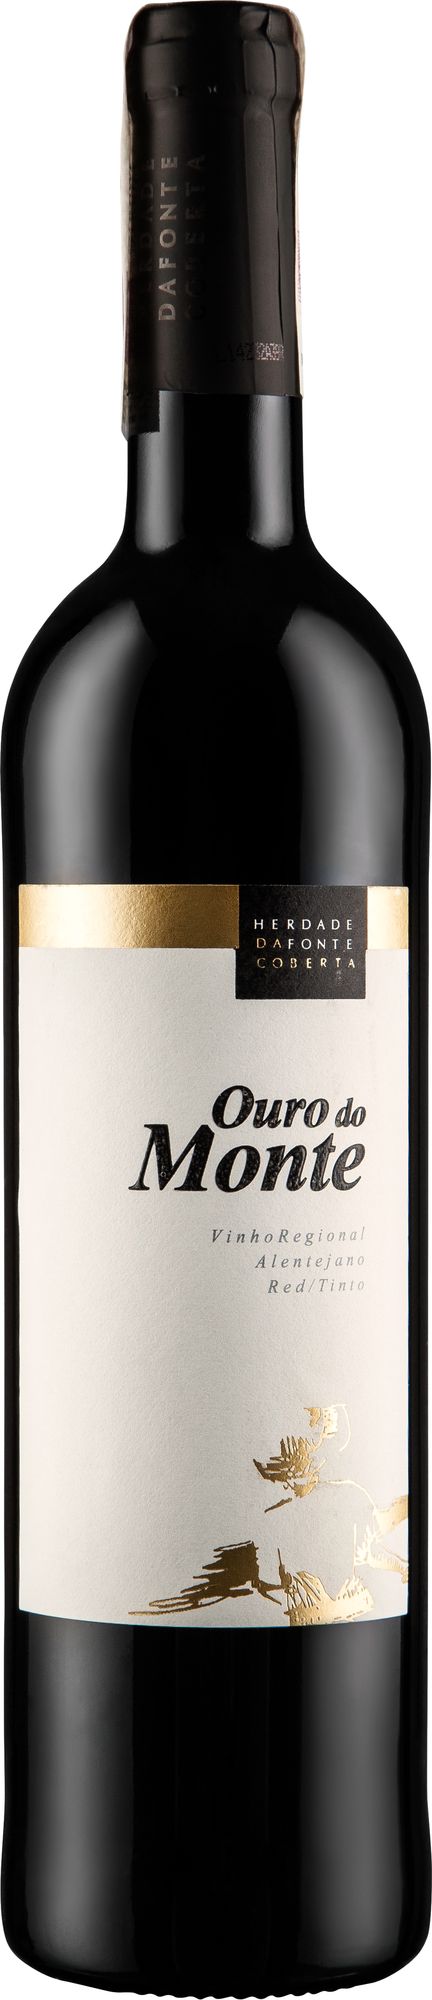 Wino Ouro de Monte Tinto Alentejano VR